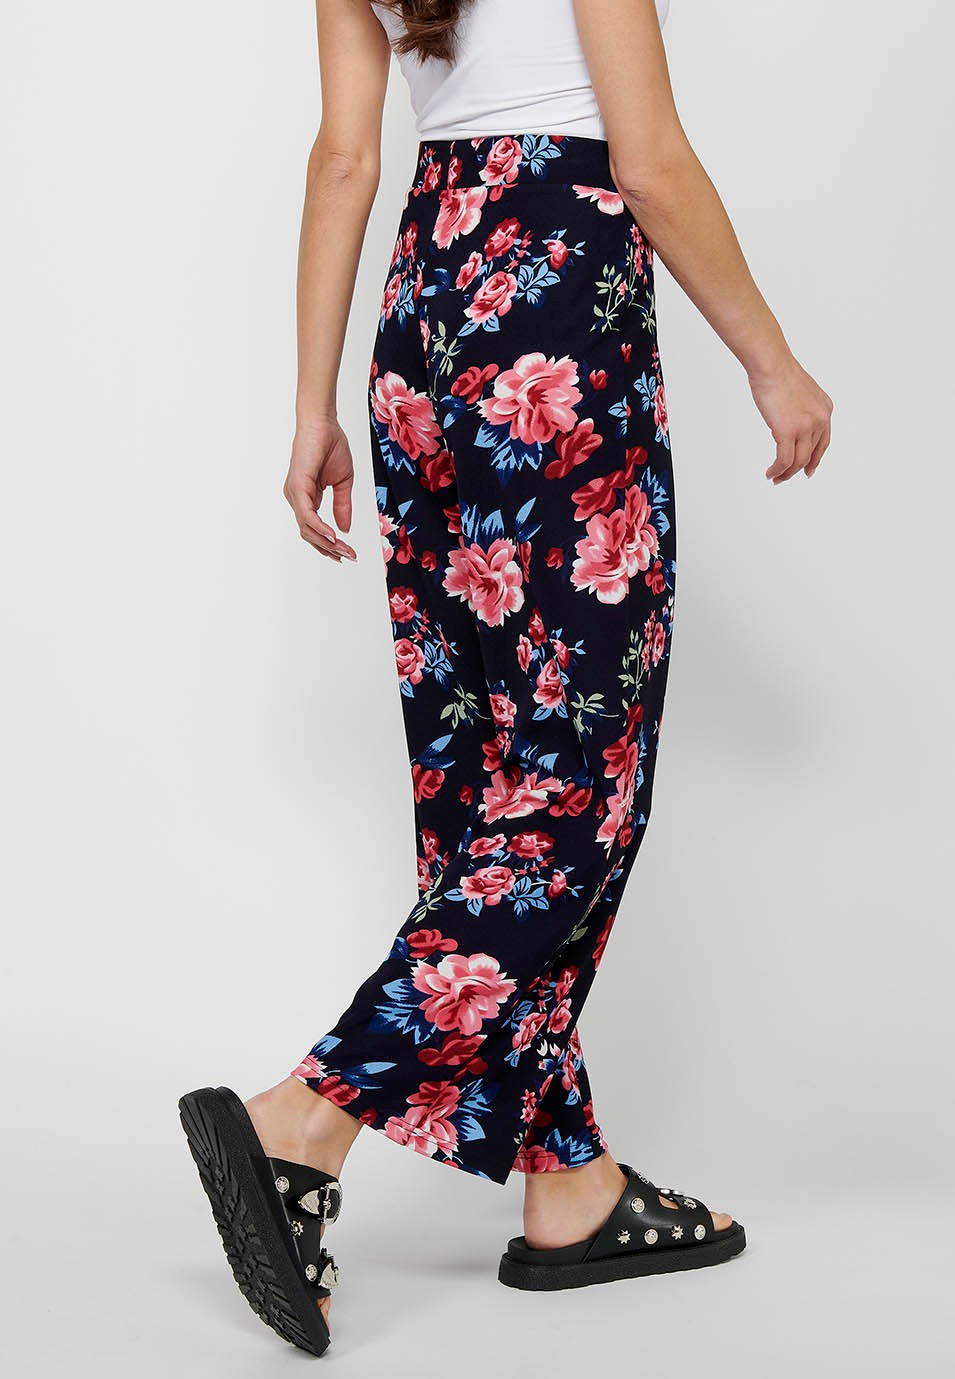 Pantalon long ample avec taille élastique caoutchoutée et imprimé floral Marine pour Femme 6